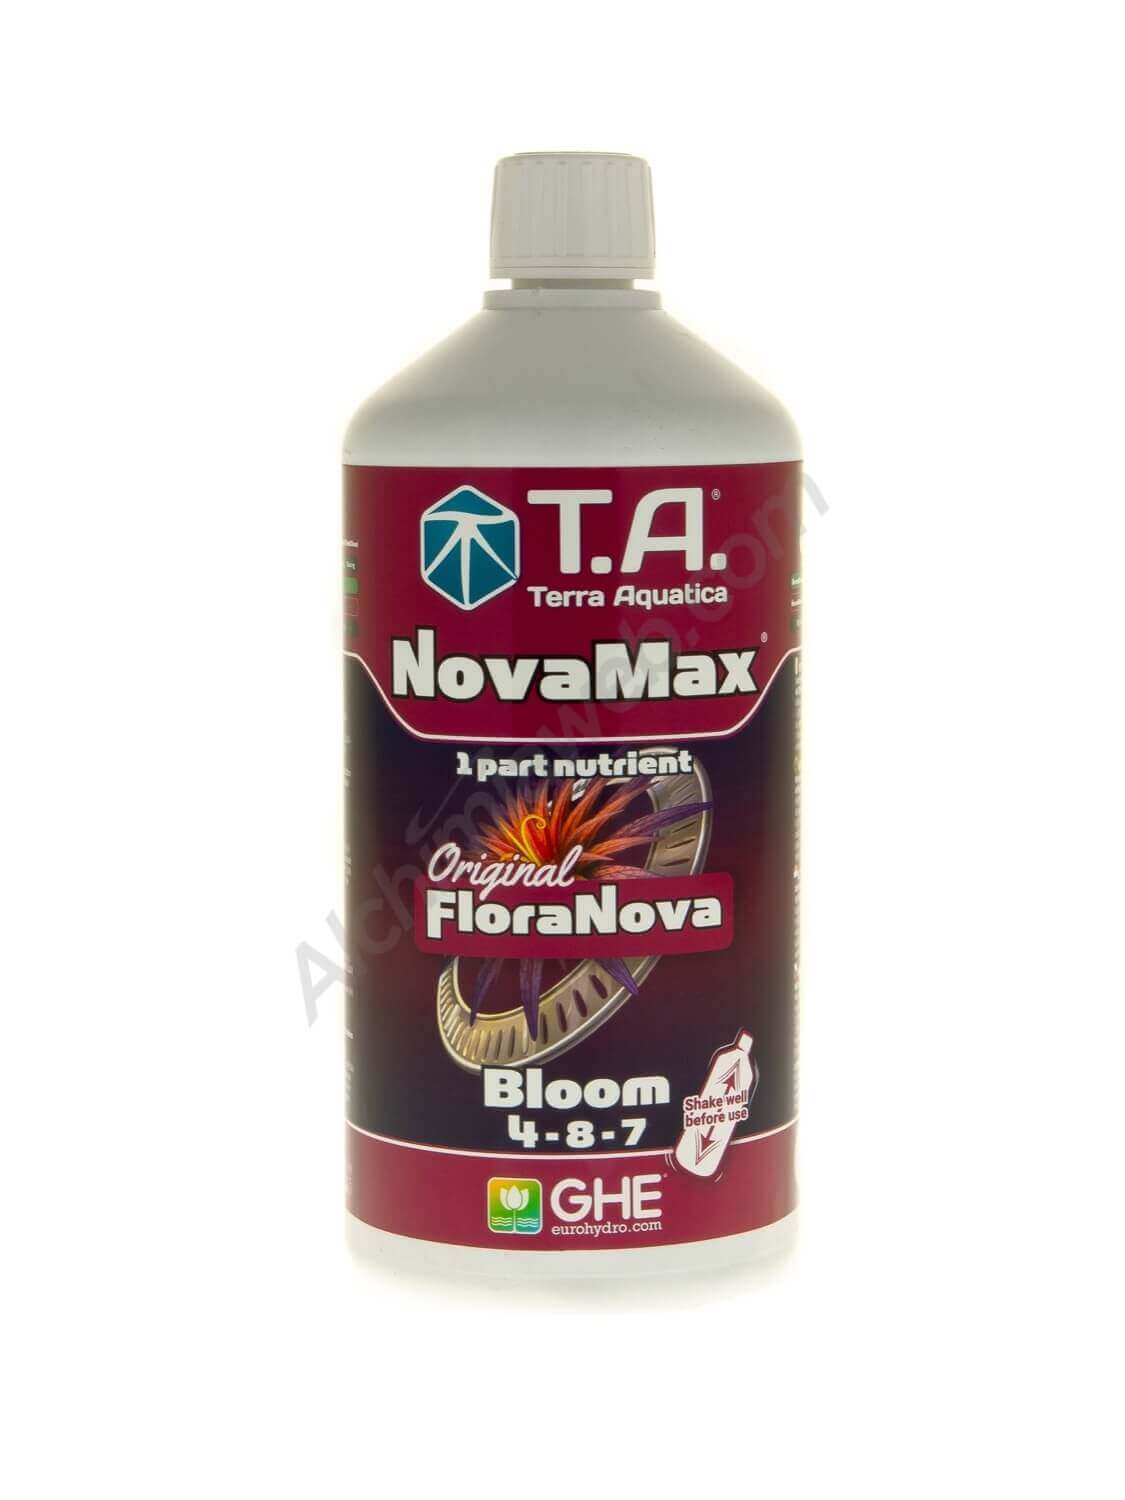 NovaMax Bloom de T.A. (abans Floranova® Bloom de GHE)